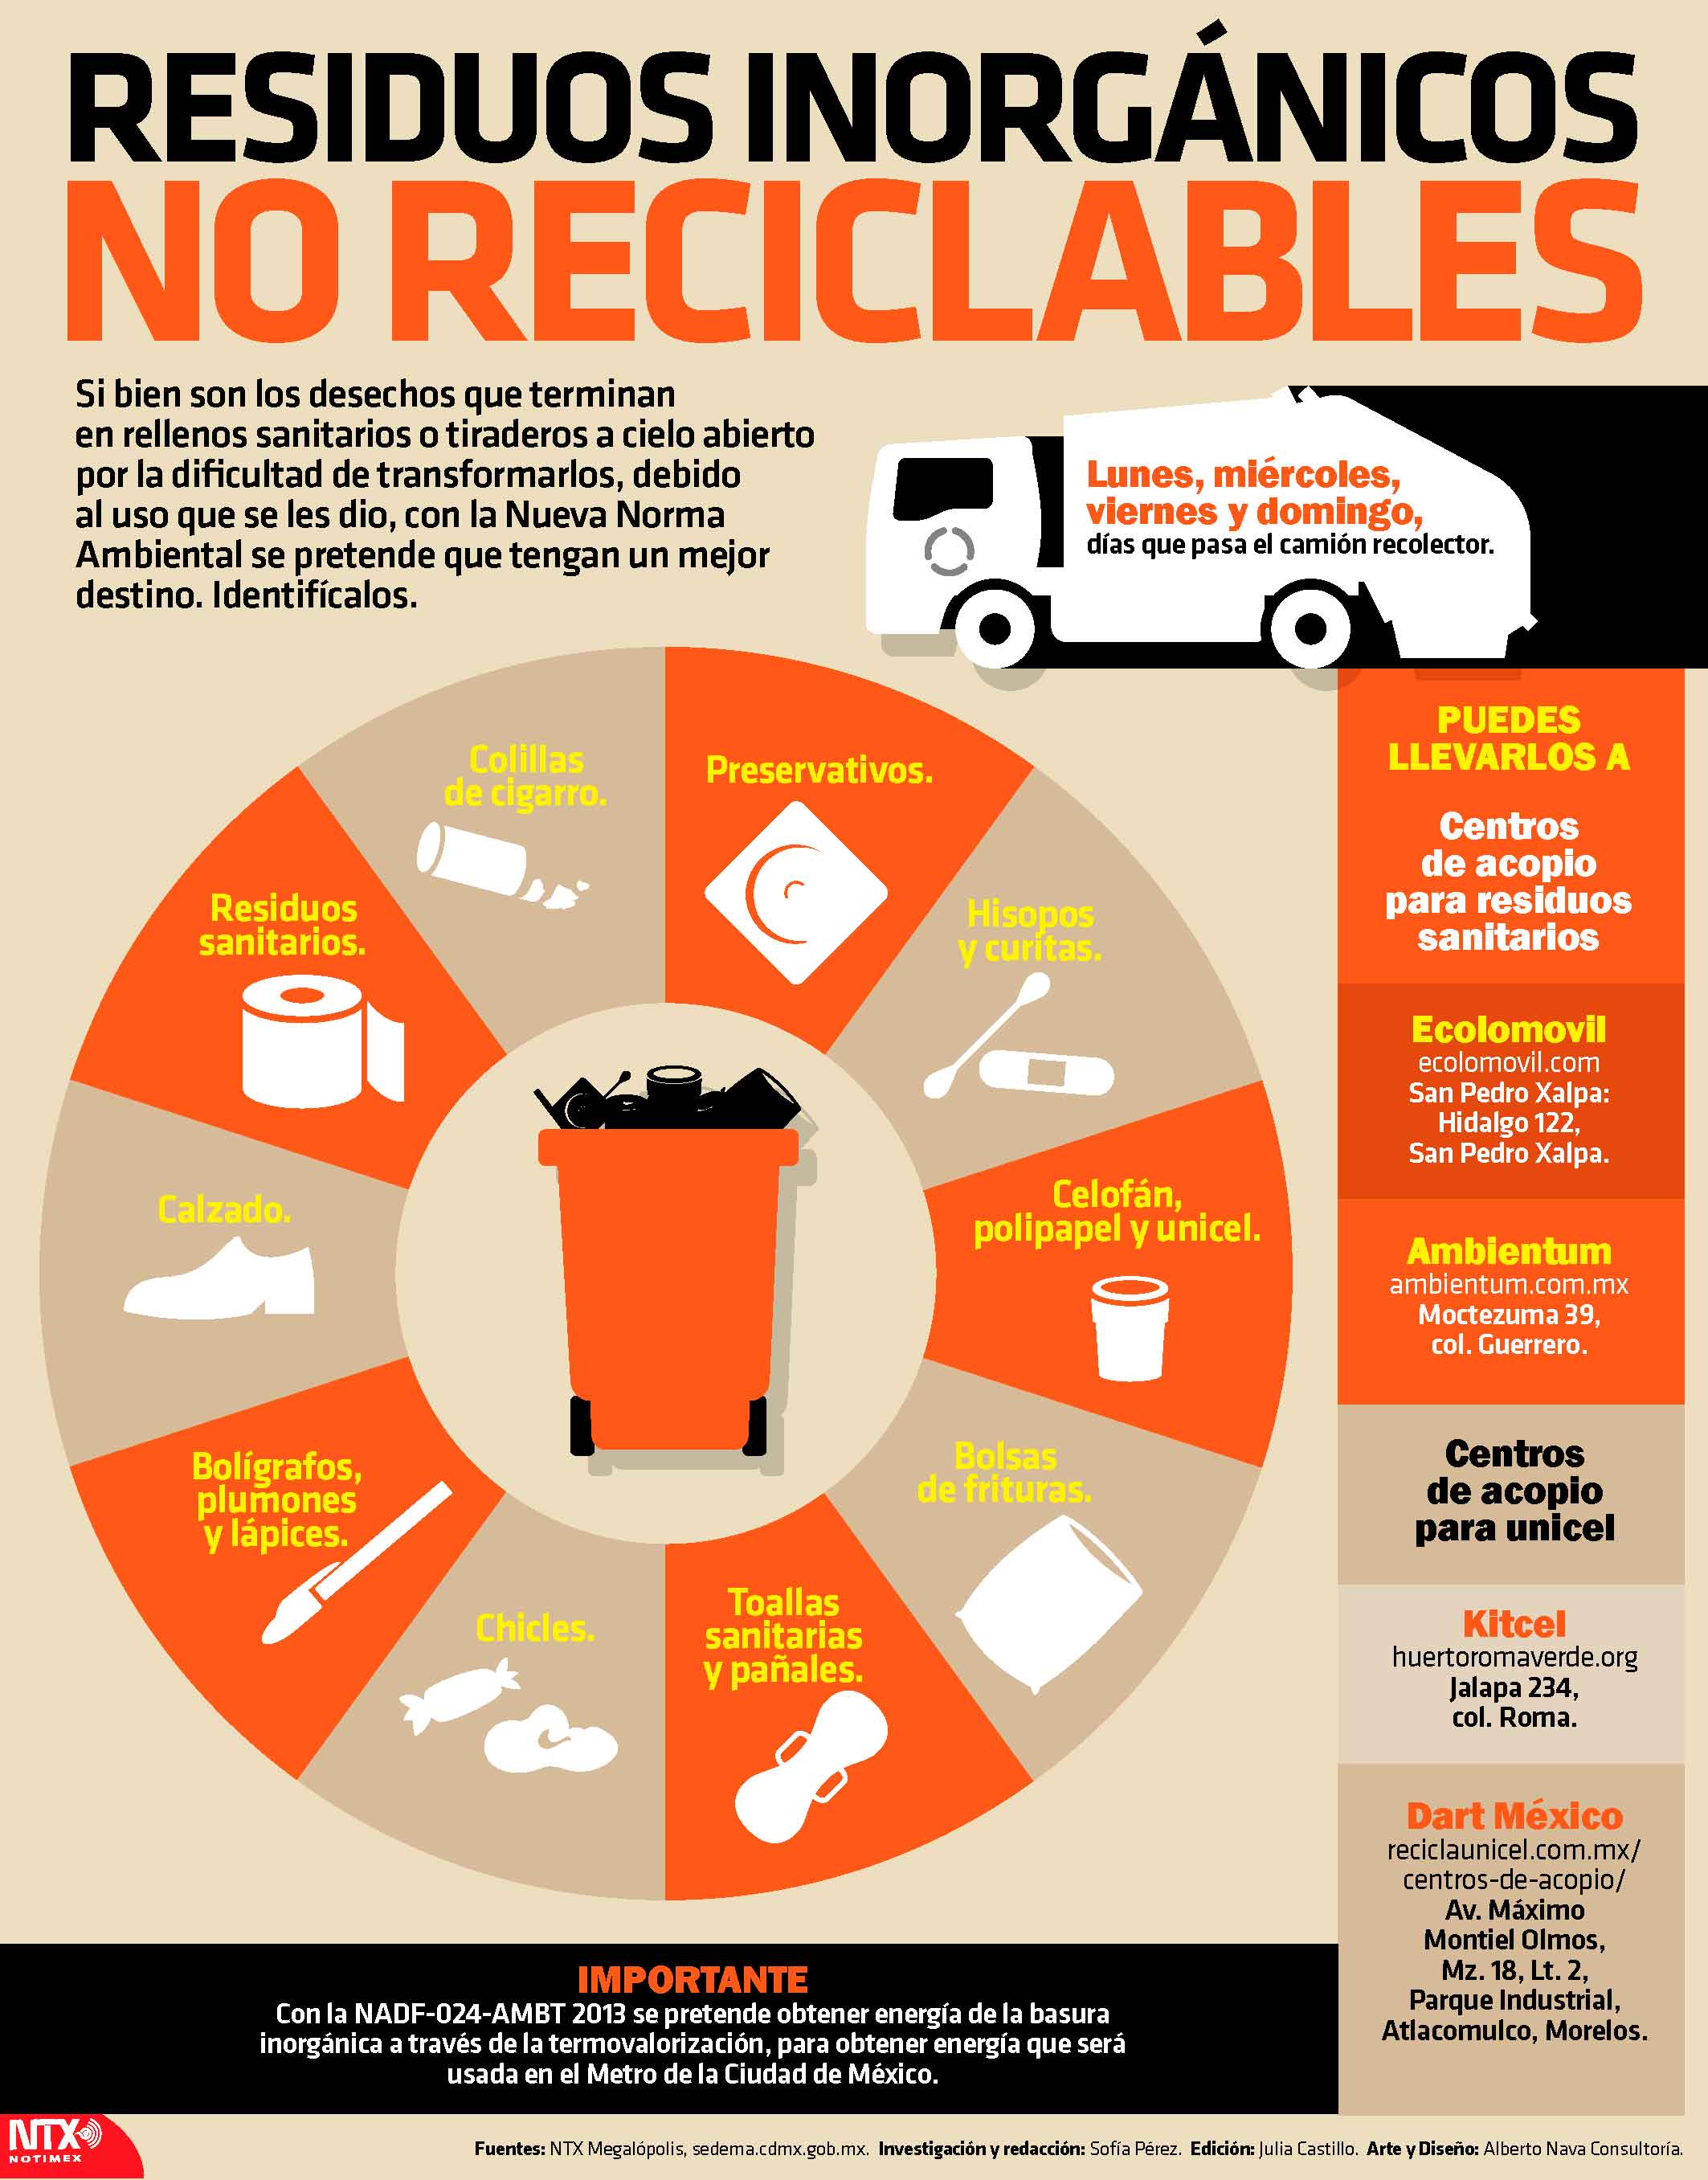 Residuos inorgnicos no reciclables